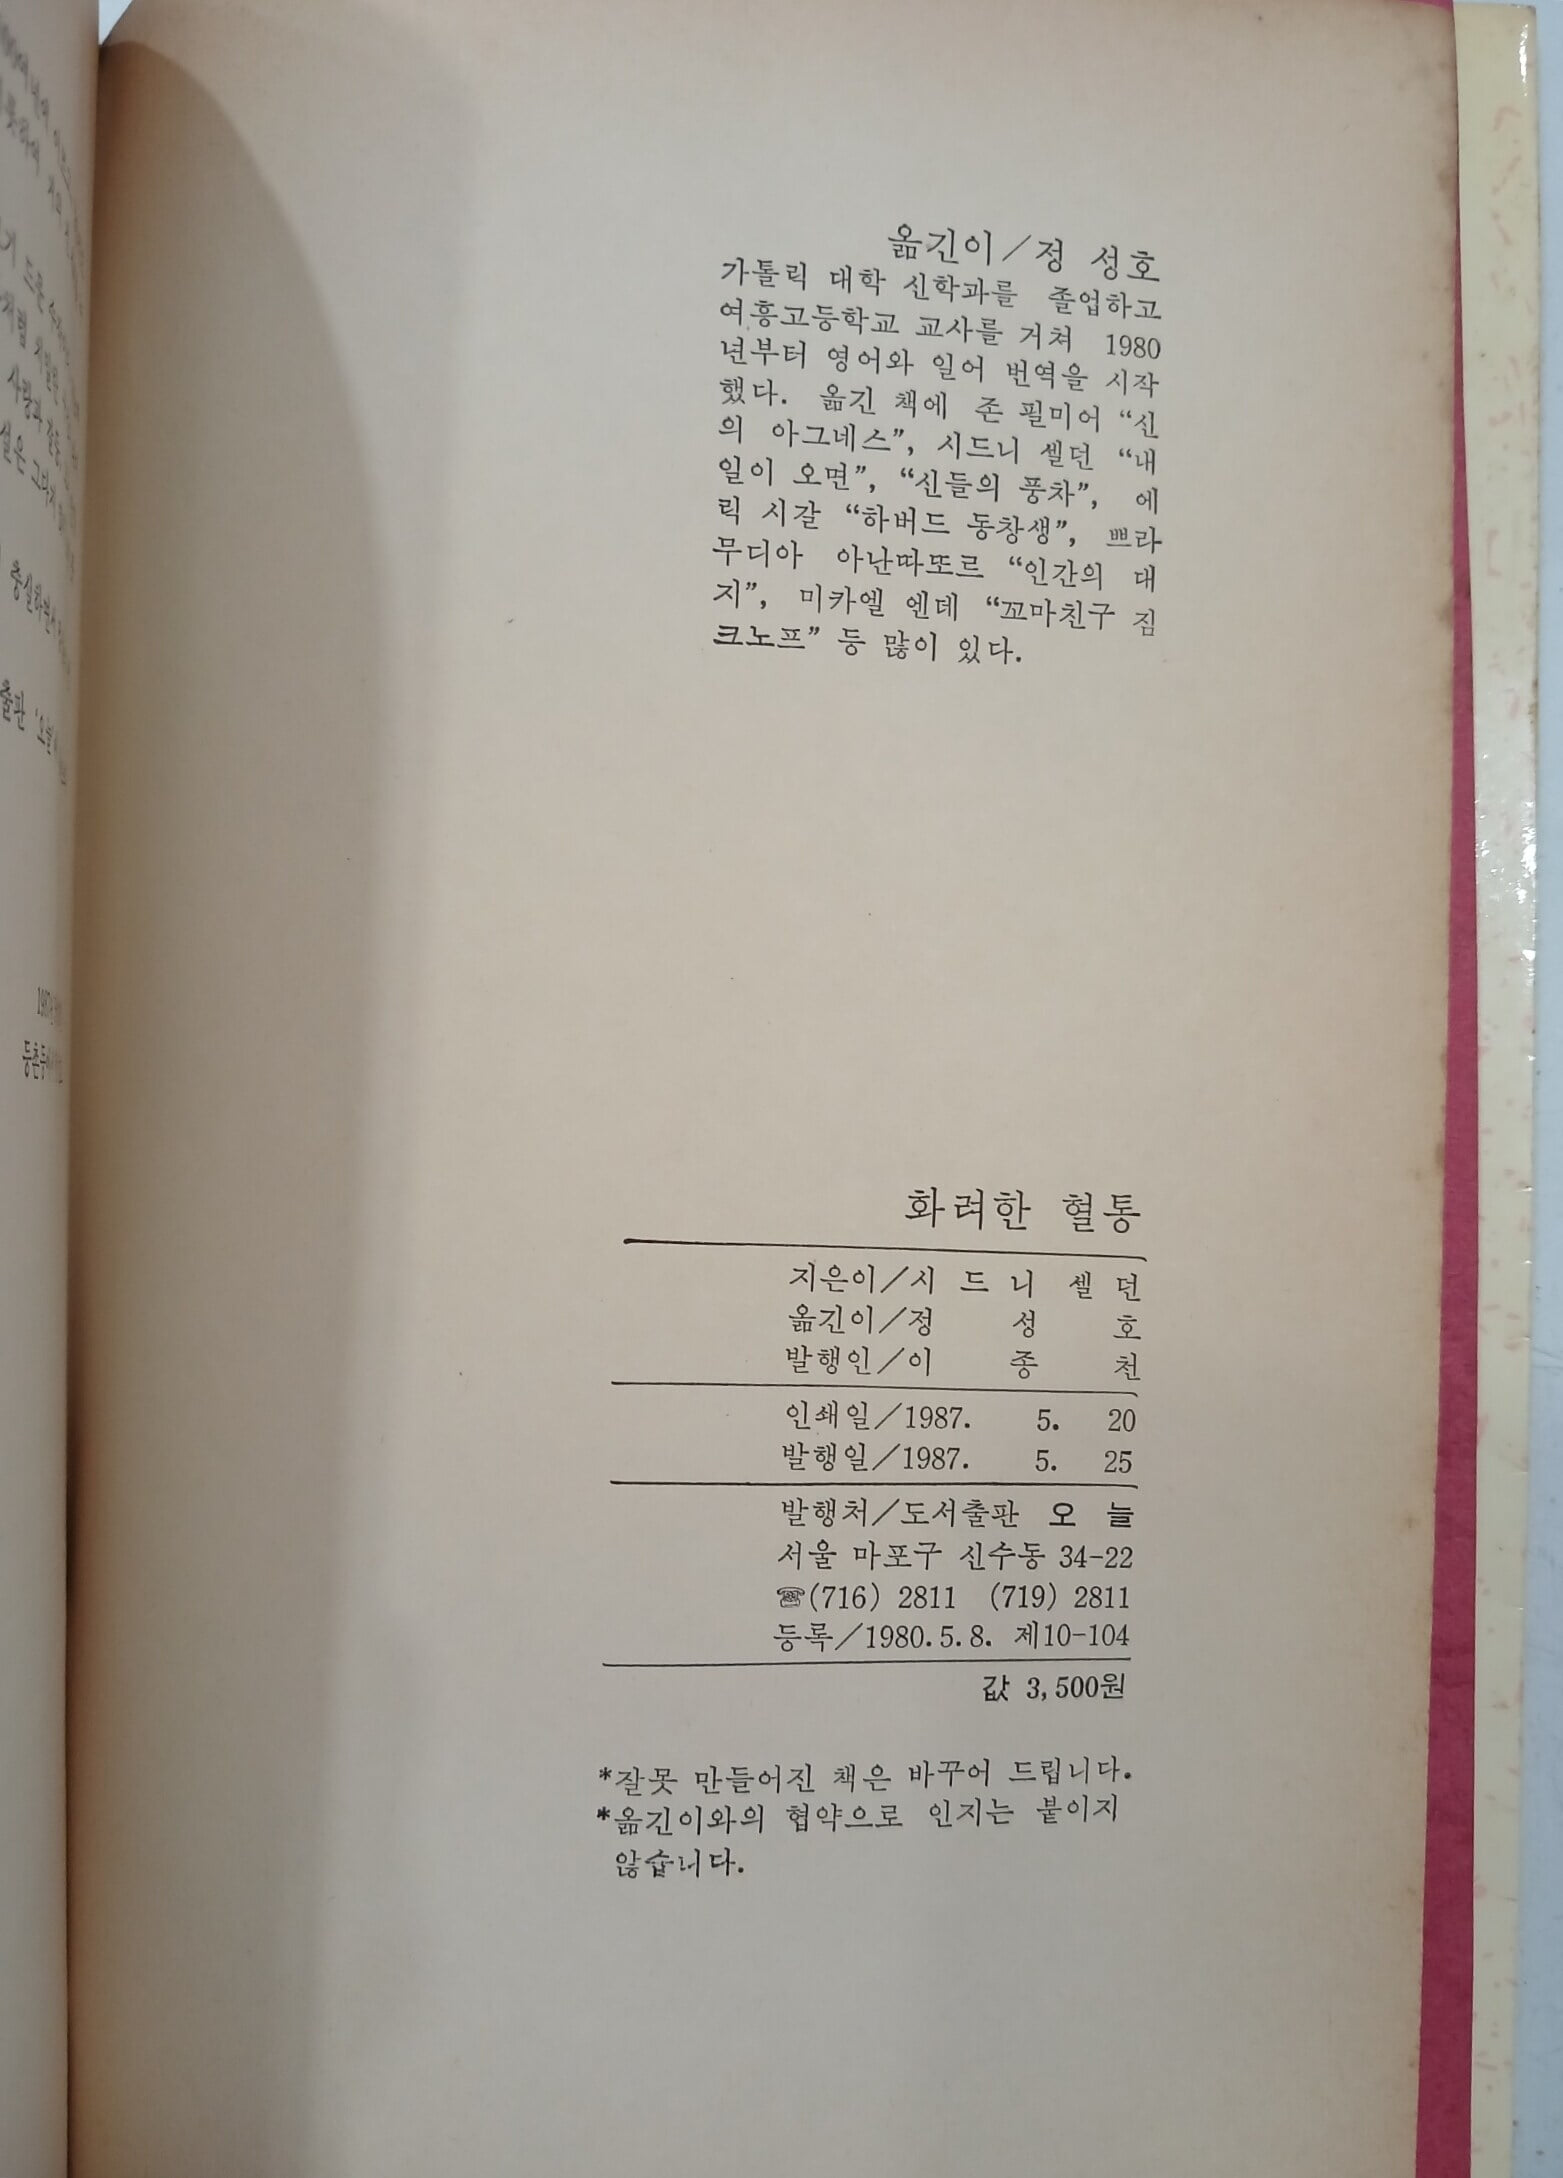 화려한 혈통 - 시드니 셀던 미공개 장편소설 | 1987년 5월 초판